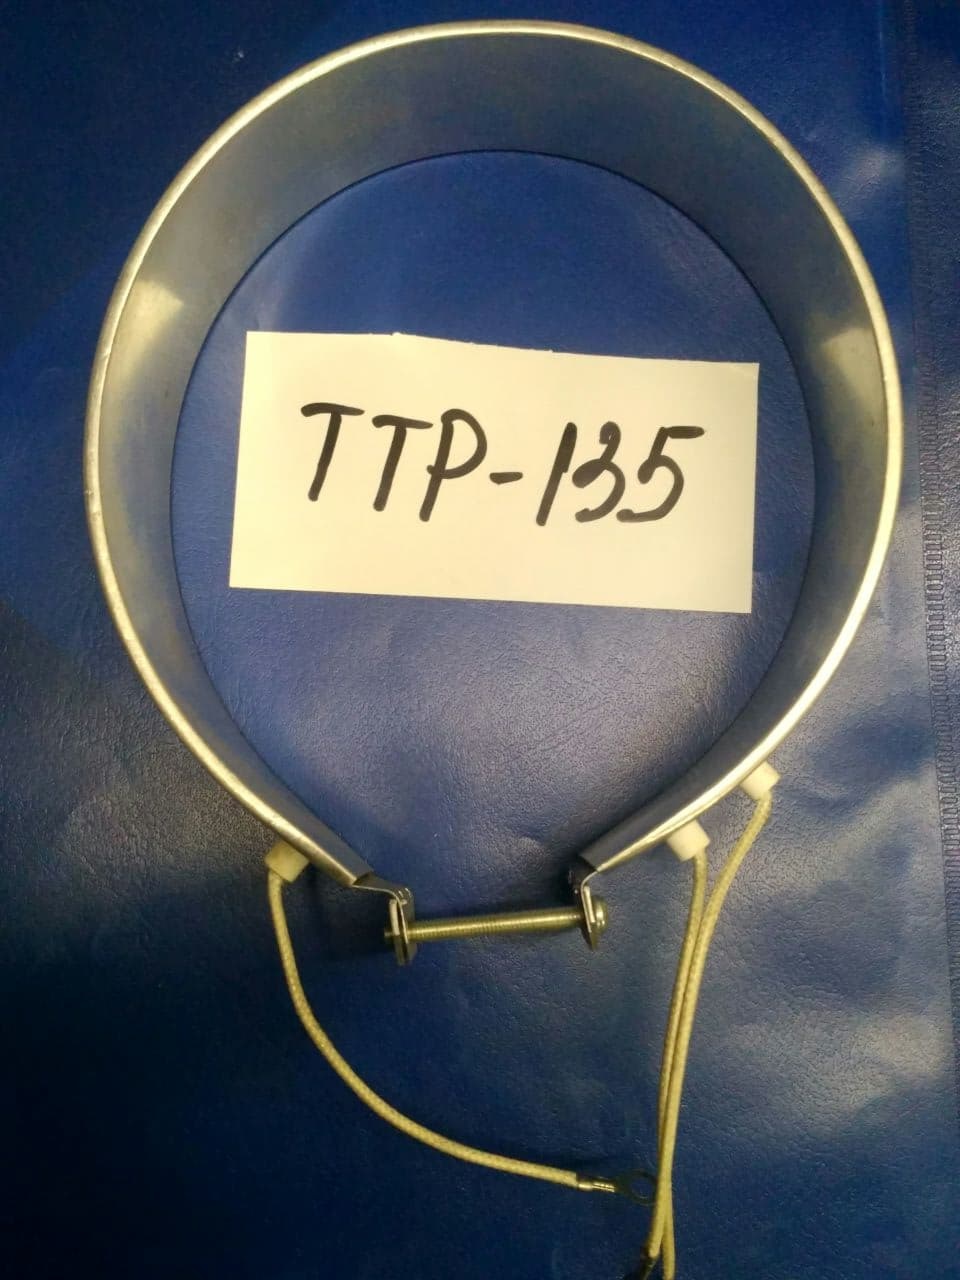 TTP-135